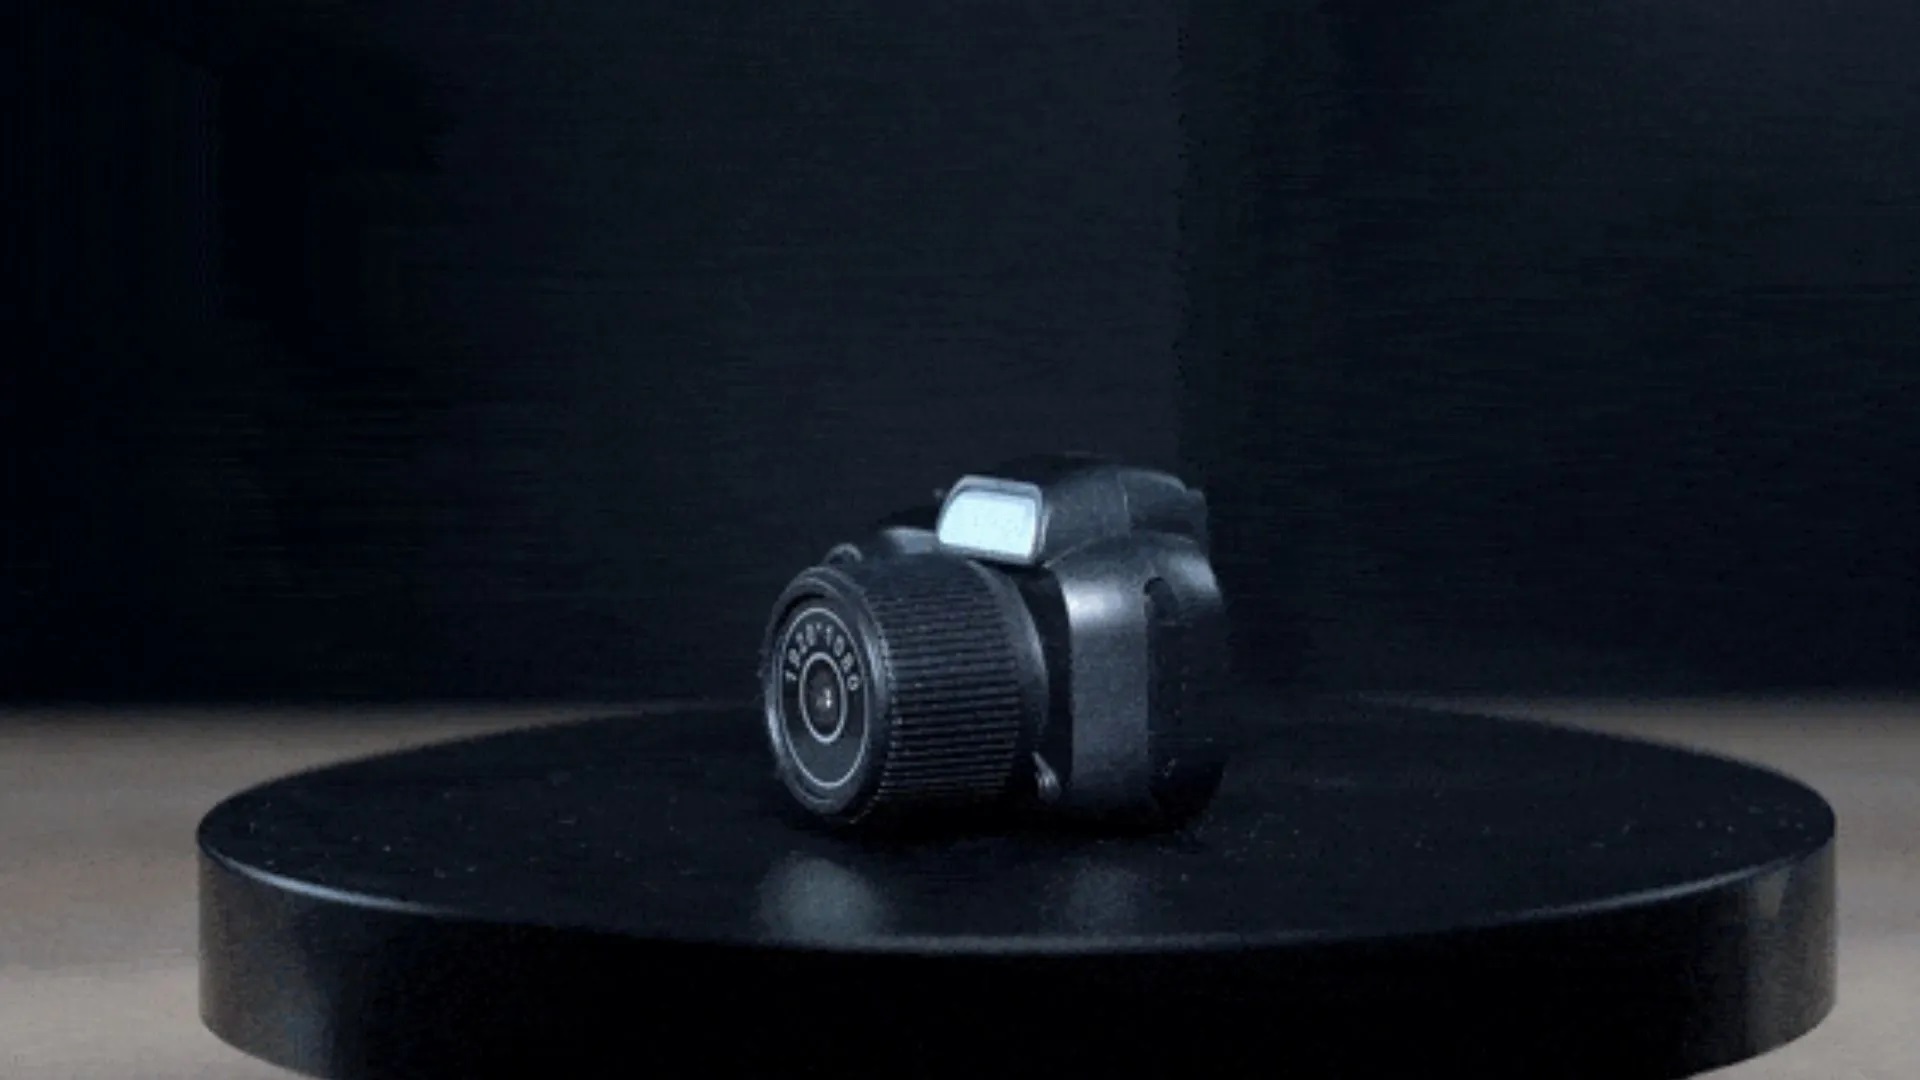 MiniCa: verdens mindste kamera med en vægt på kun 17 g